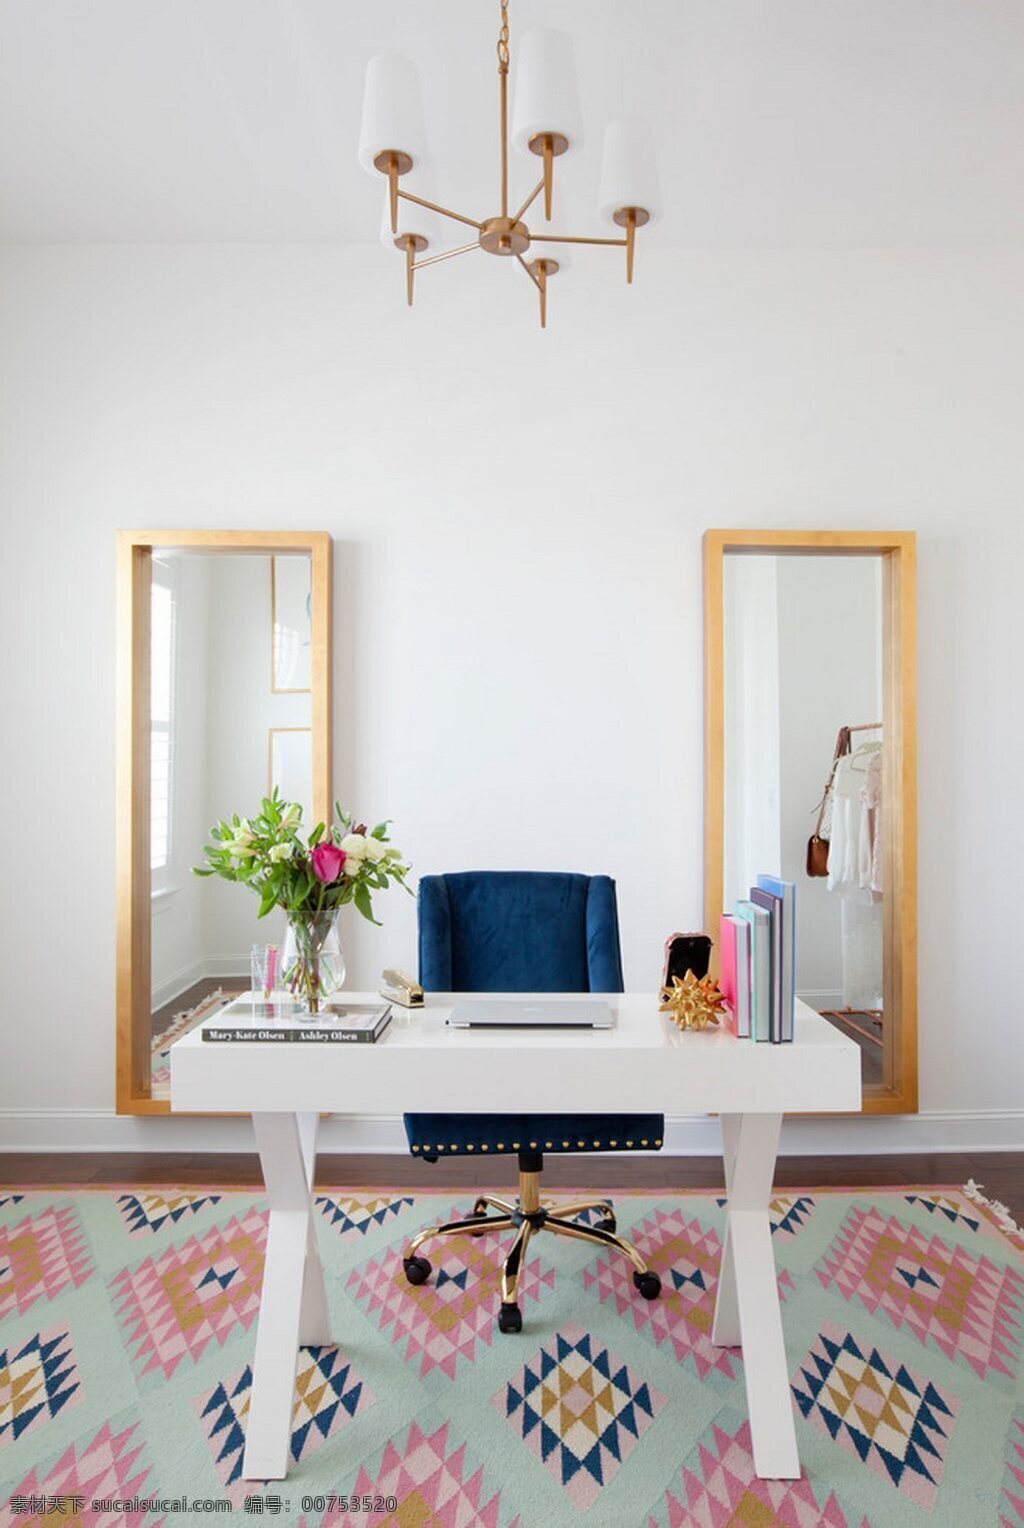 雅致 舒适 中式 风 客厅 效果图 白色书桌 复古吊灯 蓝色转椅 室内装修 鲜花花卉 印花地毯